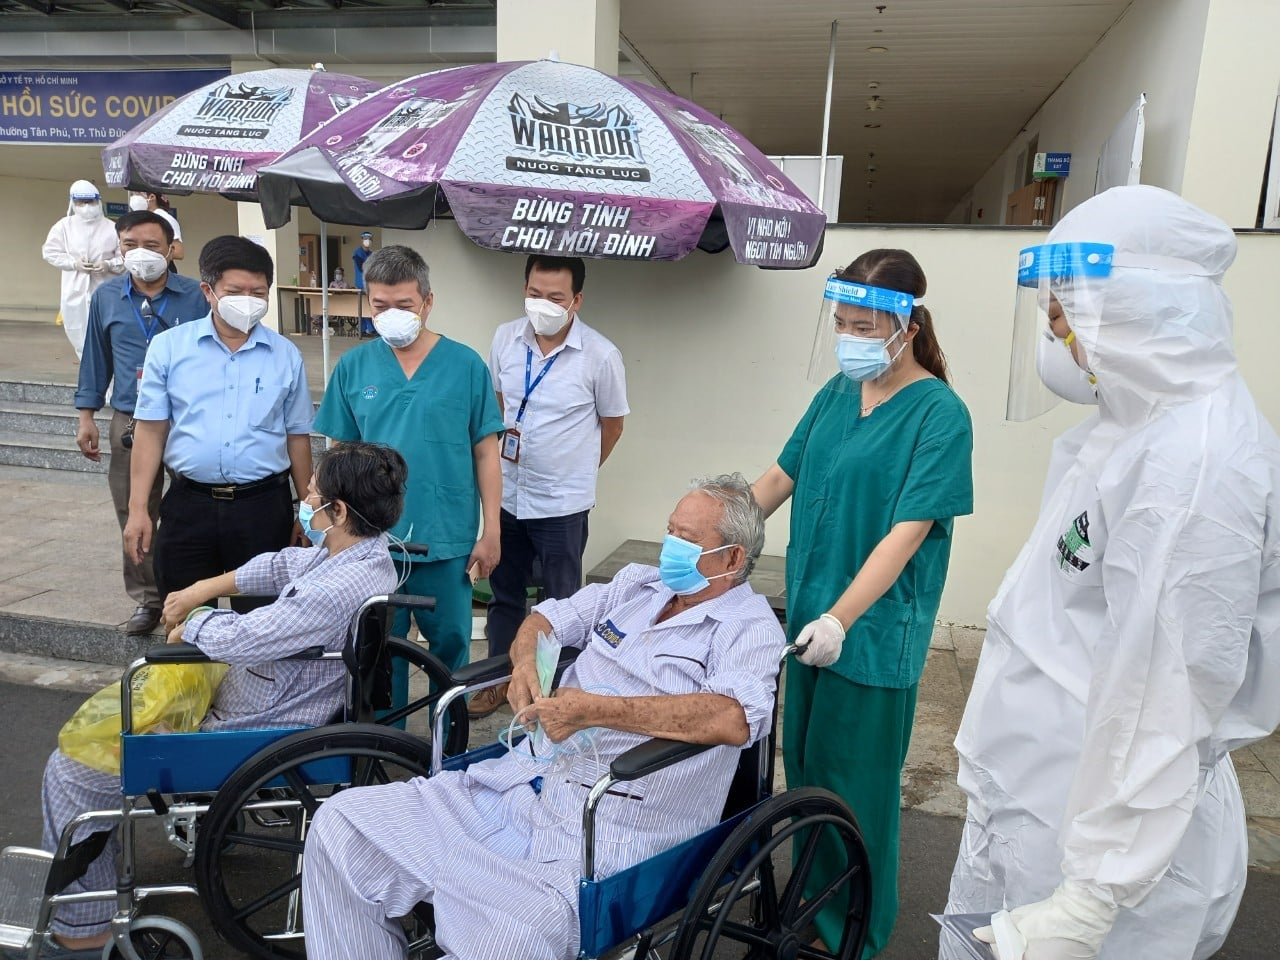 Phó Cục trưởng Cục Quản lý Khám chữa bệnh Nguyễn Trọng Khoa và BSCKII Trần Thanh Linh thăm hỏi những người khỏi bệnh được xuất viện.